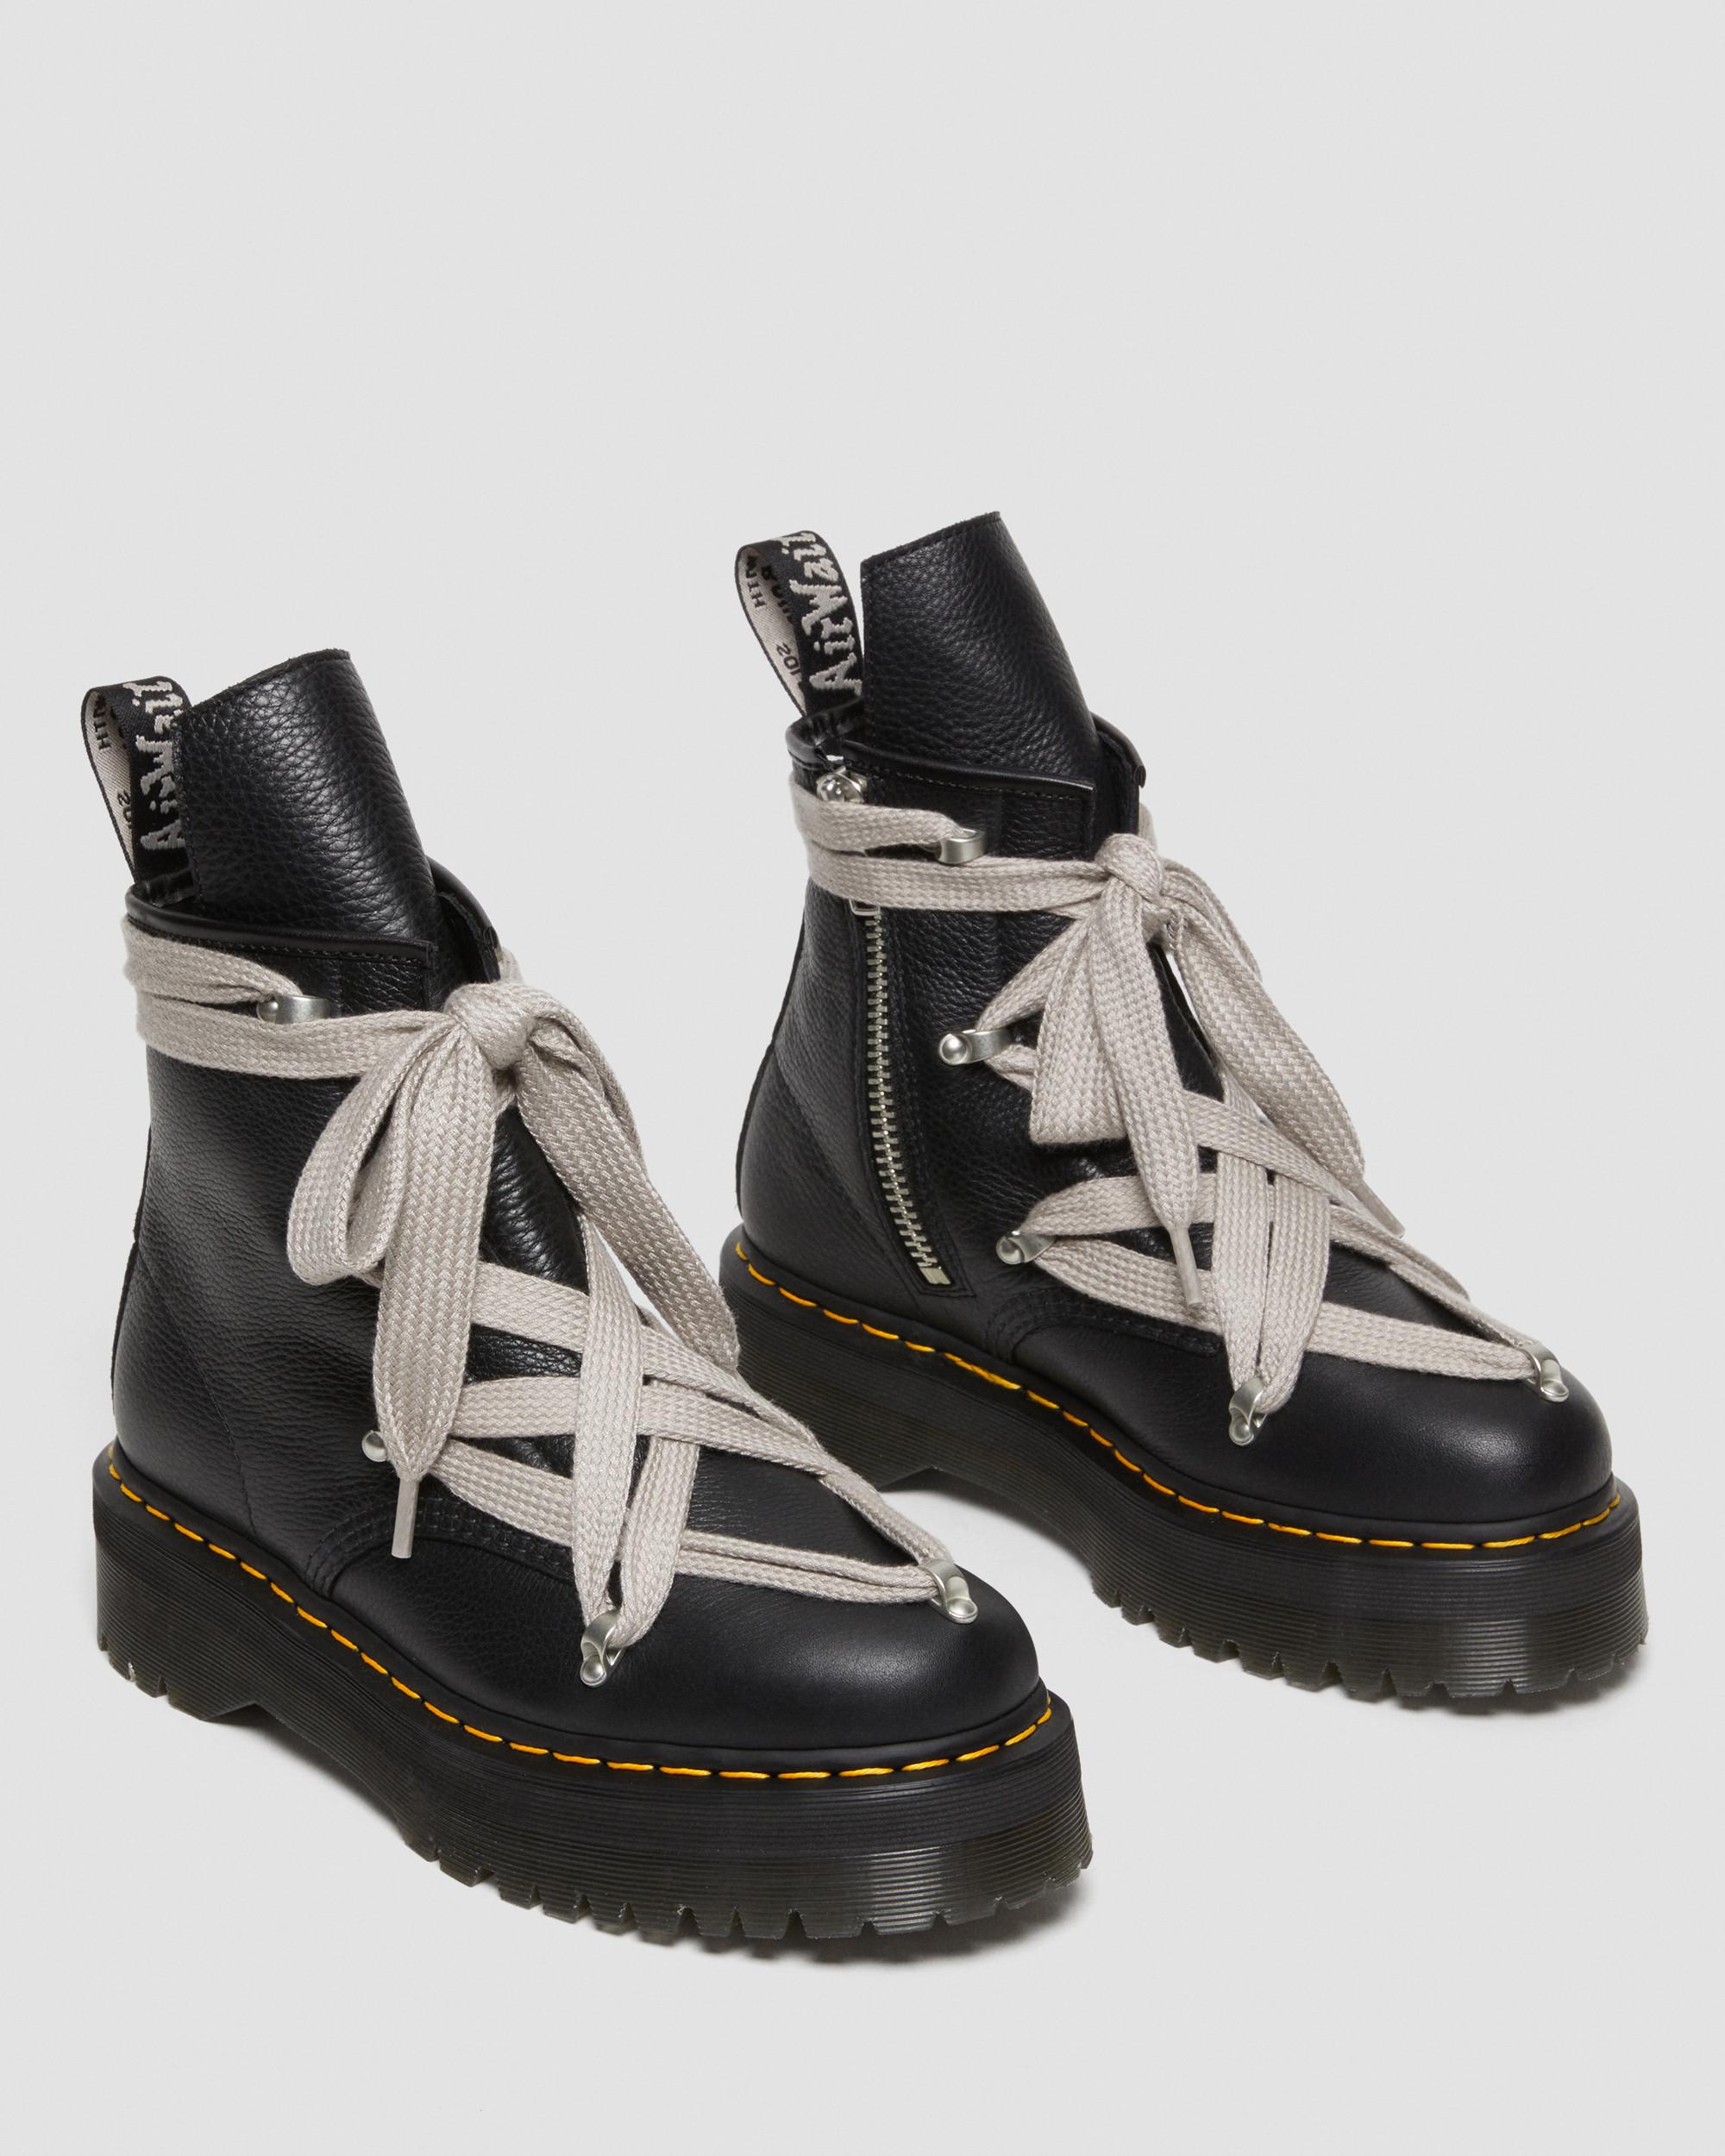 1460 Rick Owens Leather Platform Boots in Black | Dr. Martens